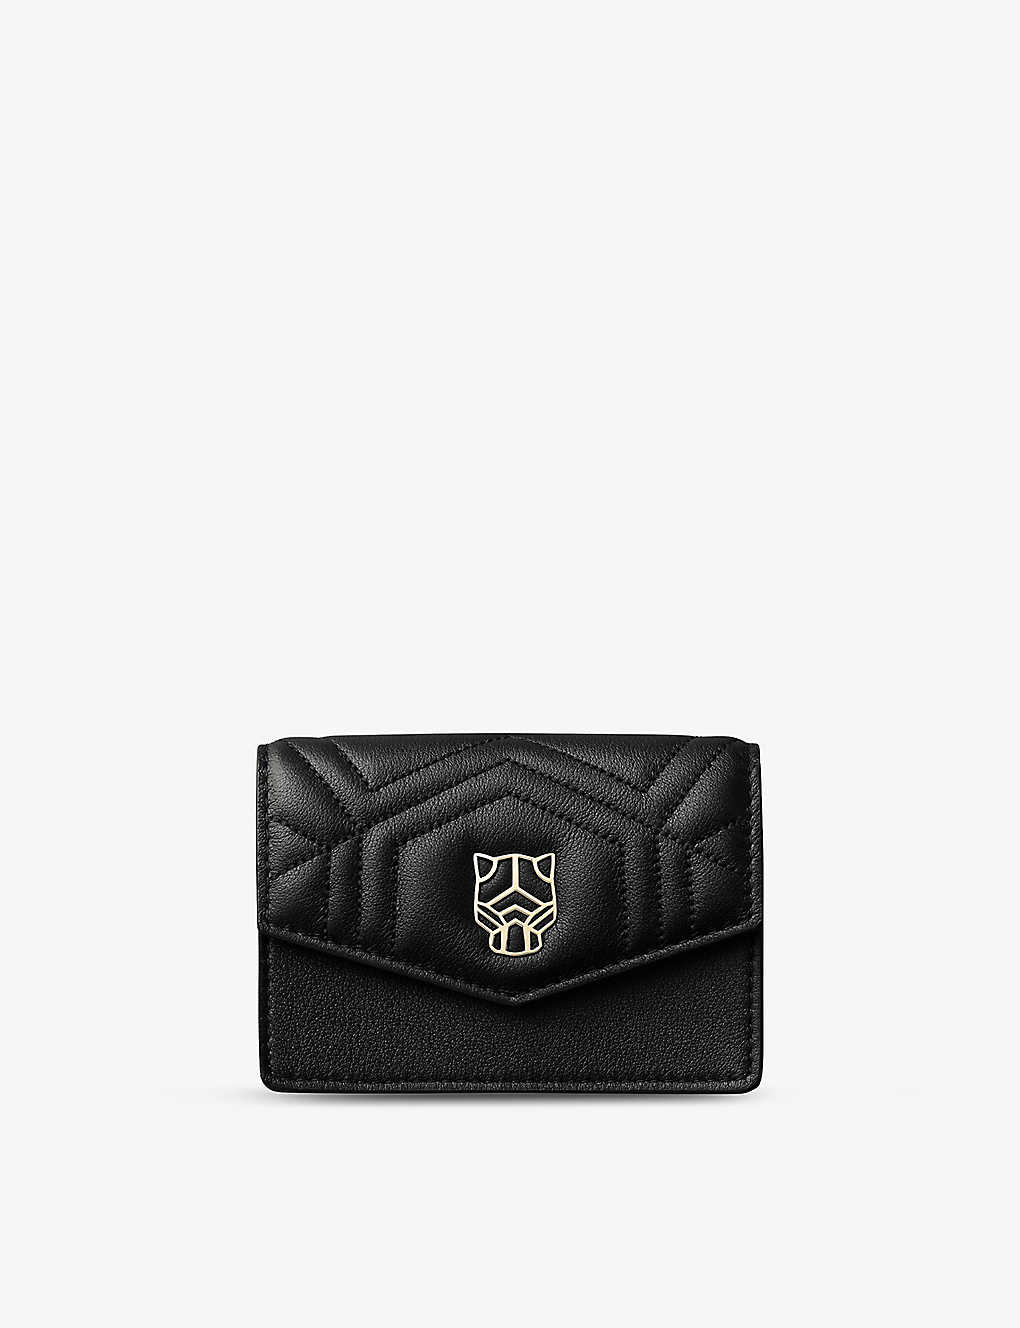 Cartier Black Trouserhère De Leather Card Holder